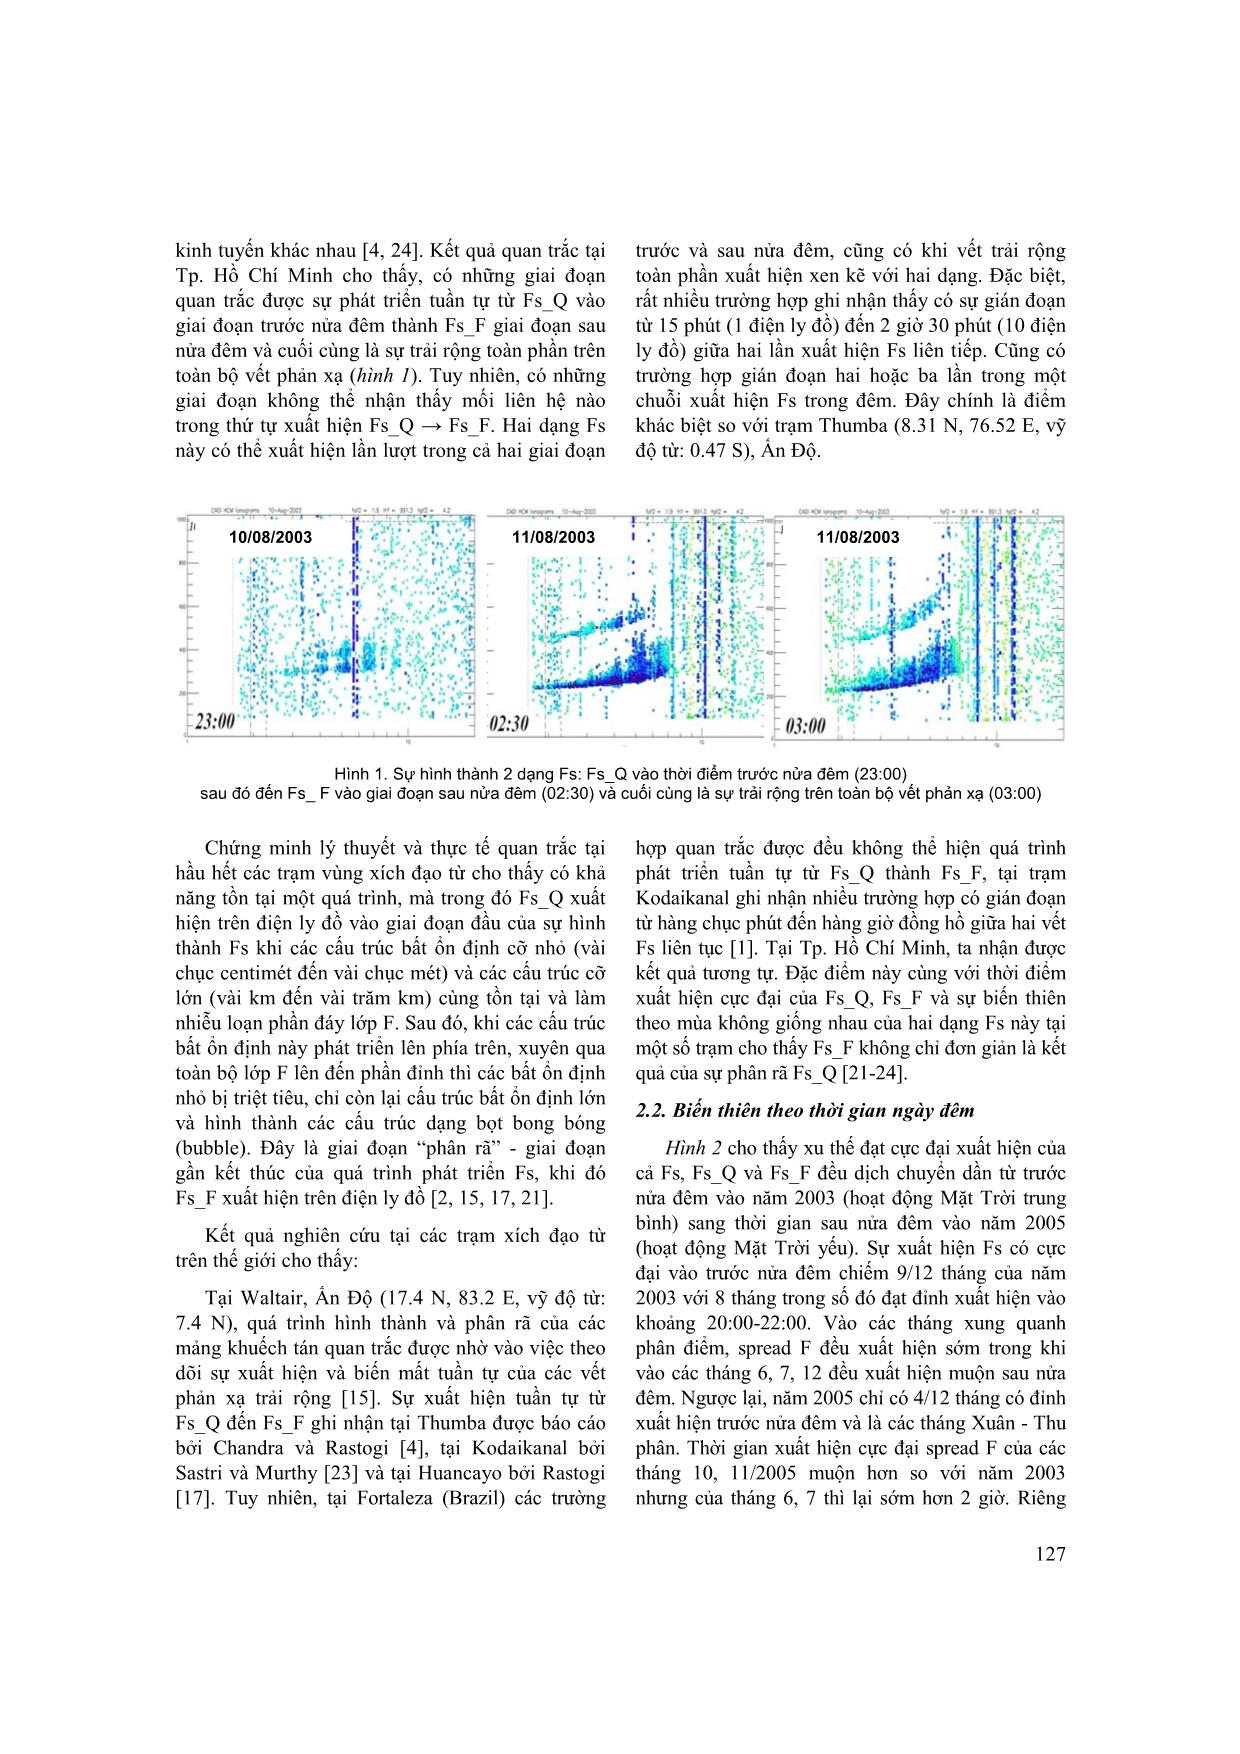 So sánh sự xuất hiện của Spread F xích đạo từ trong năm mặt trời hoạt động trung bình (2003) và hoạt động yếu (2005) trang 2